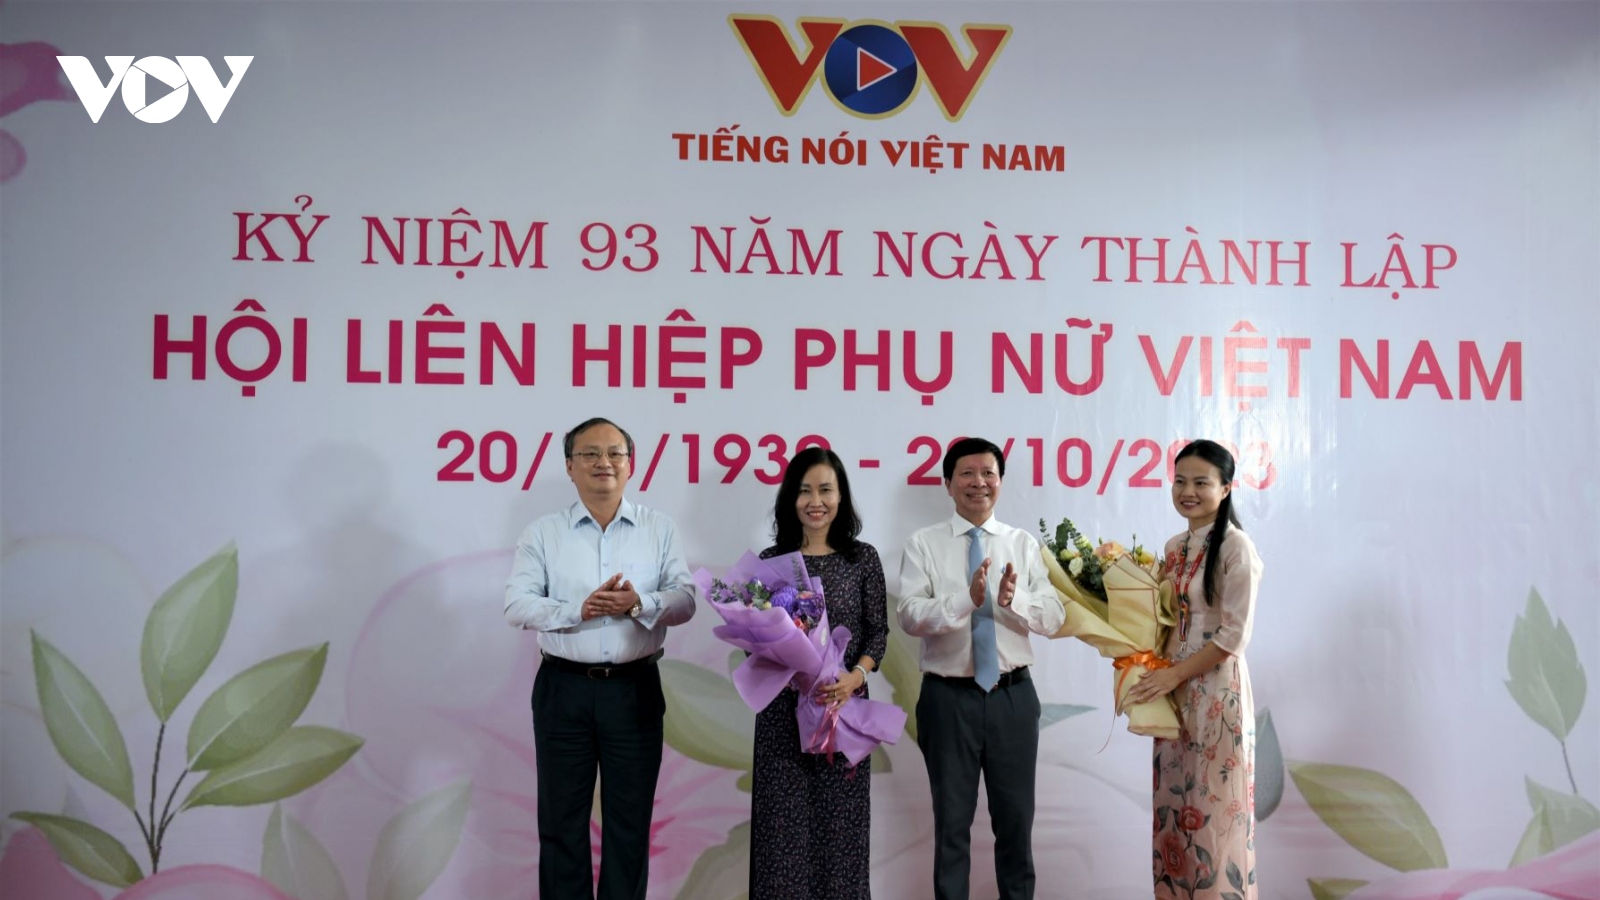 VOV kỷ niệm 93 năm ngày thành lập Hội liên hiệp Phụ nữ Việt Nam